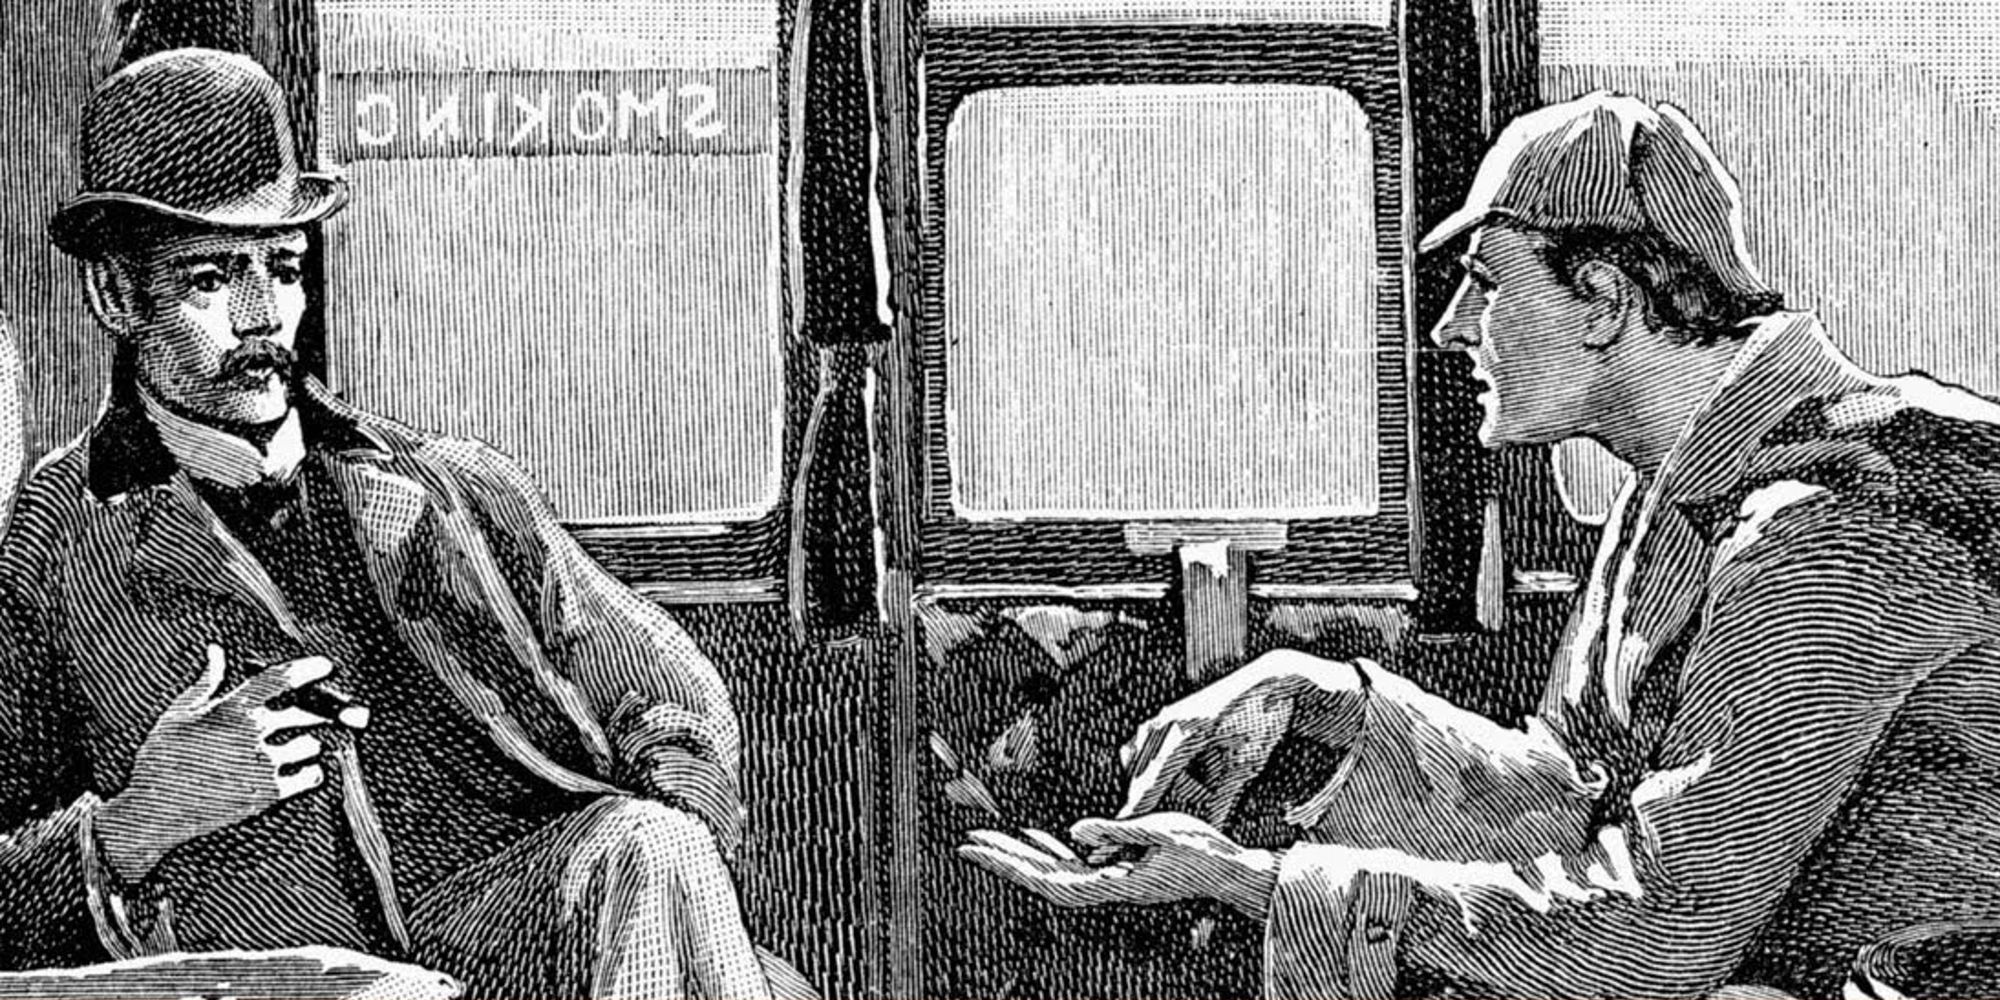 Sherlock Holmes and John Watson on a train in A Study In Scarlet